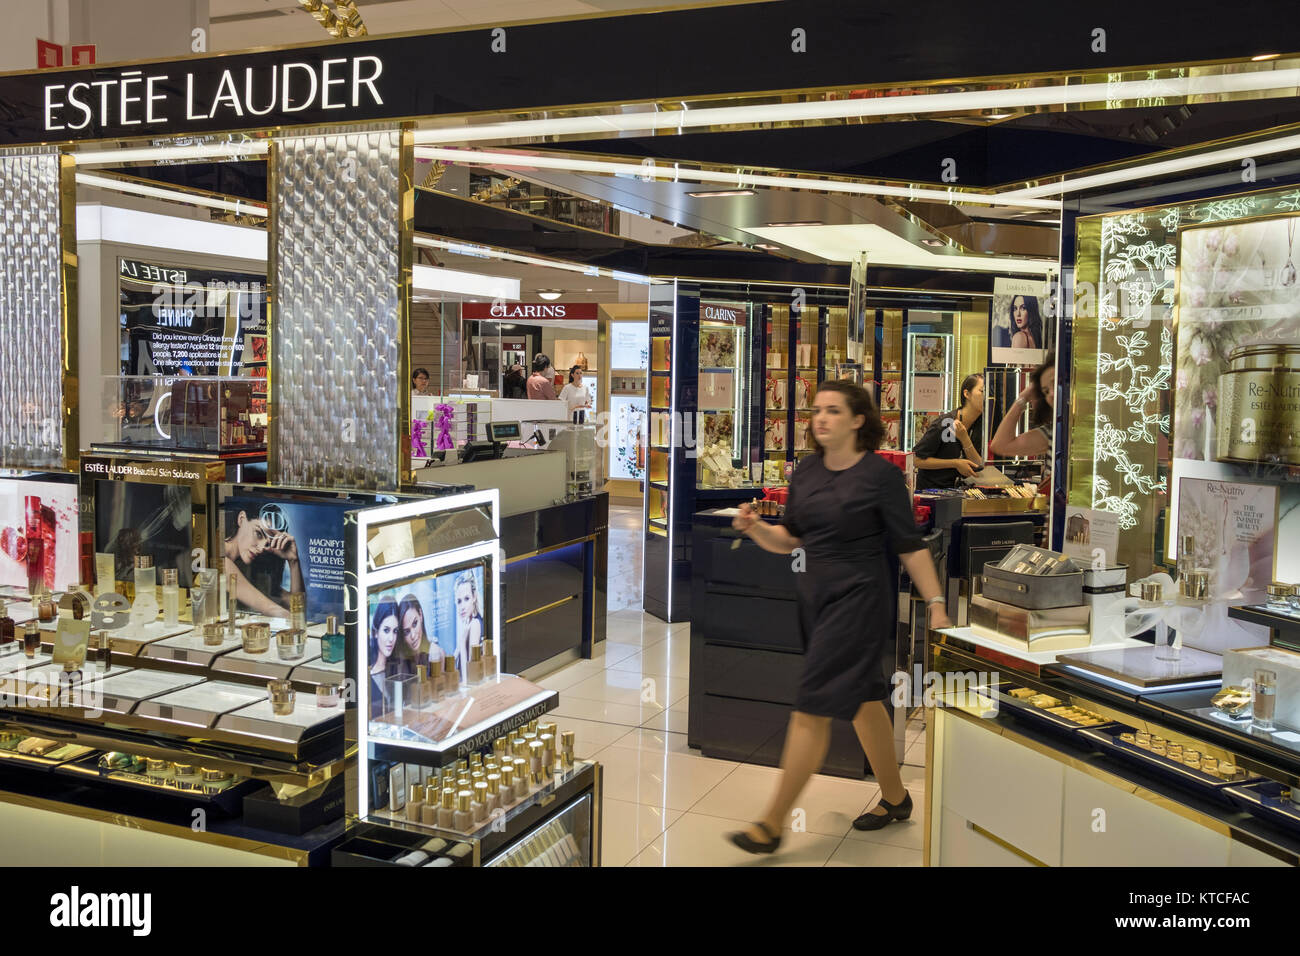 Estee Lauder stand negozio di vendita di prodotti di bellezza e profumi in un David Jones store in Sydney, Australia Foto Stock